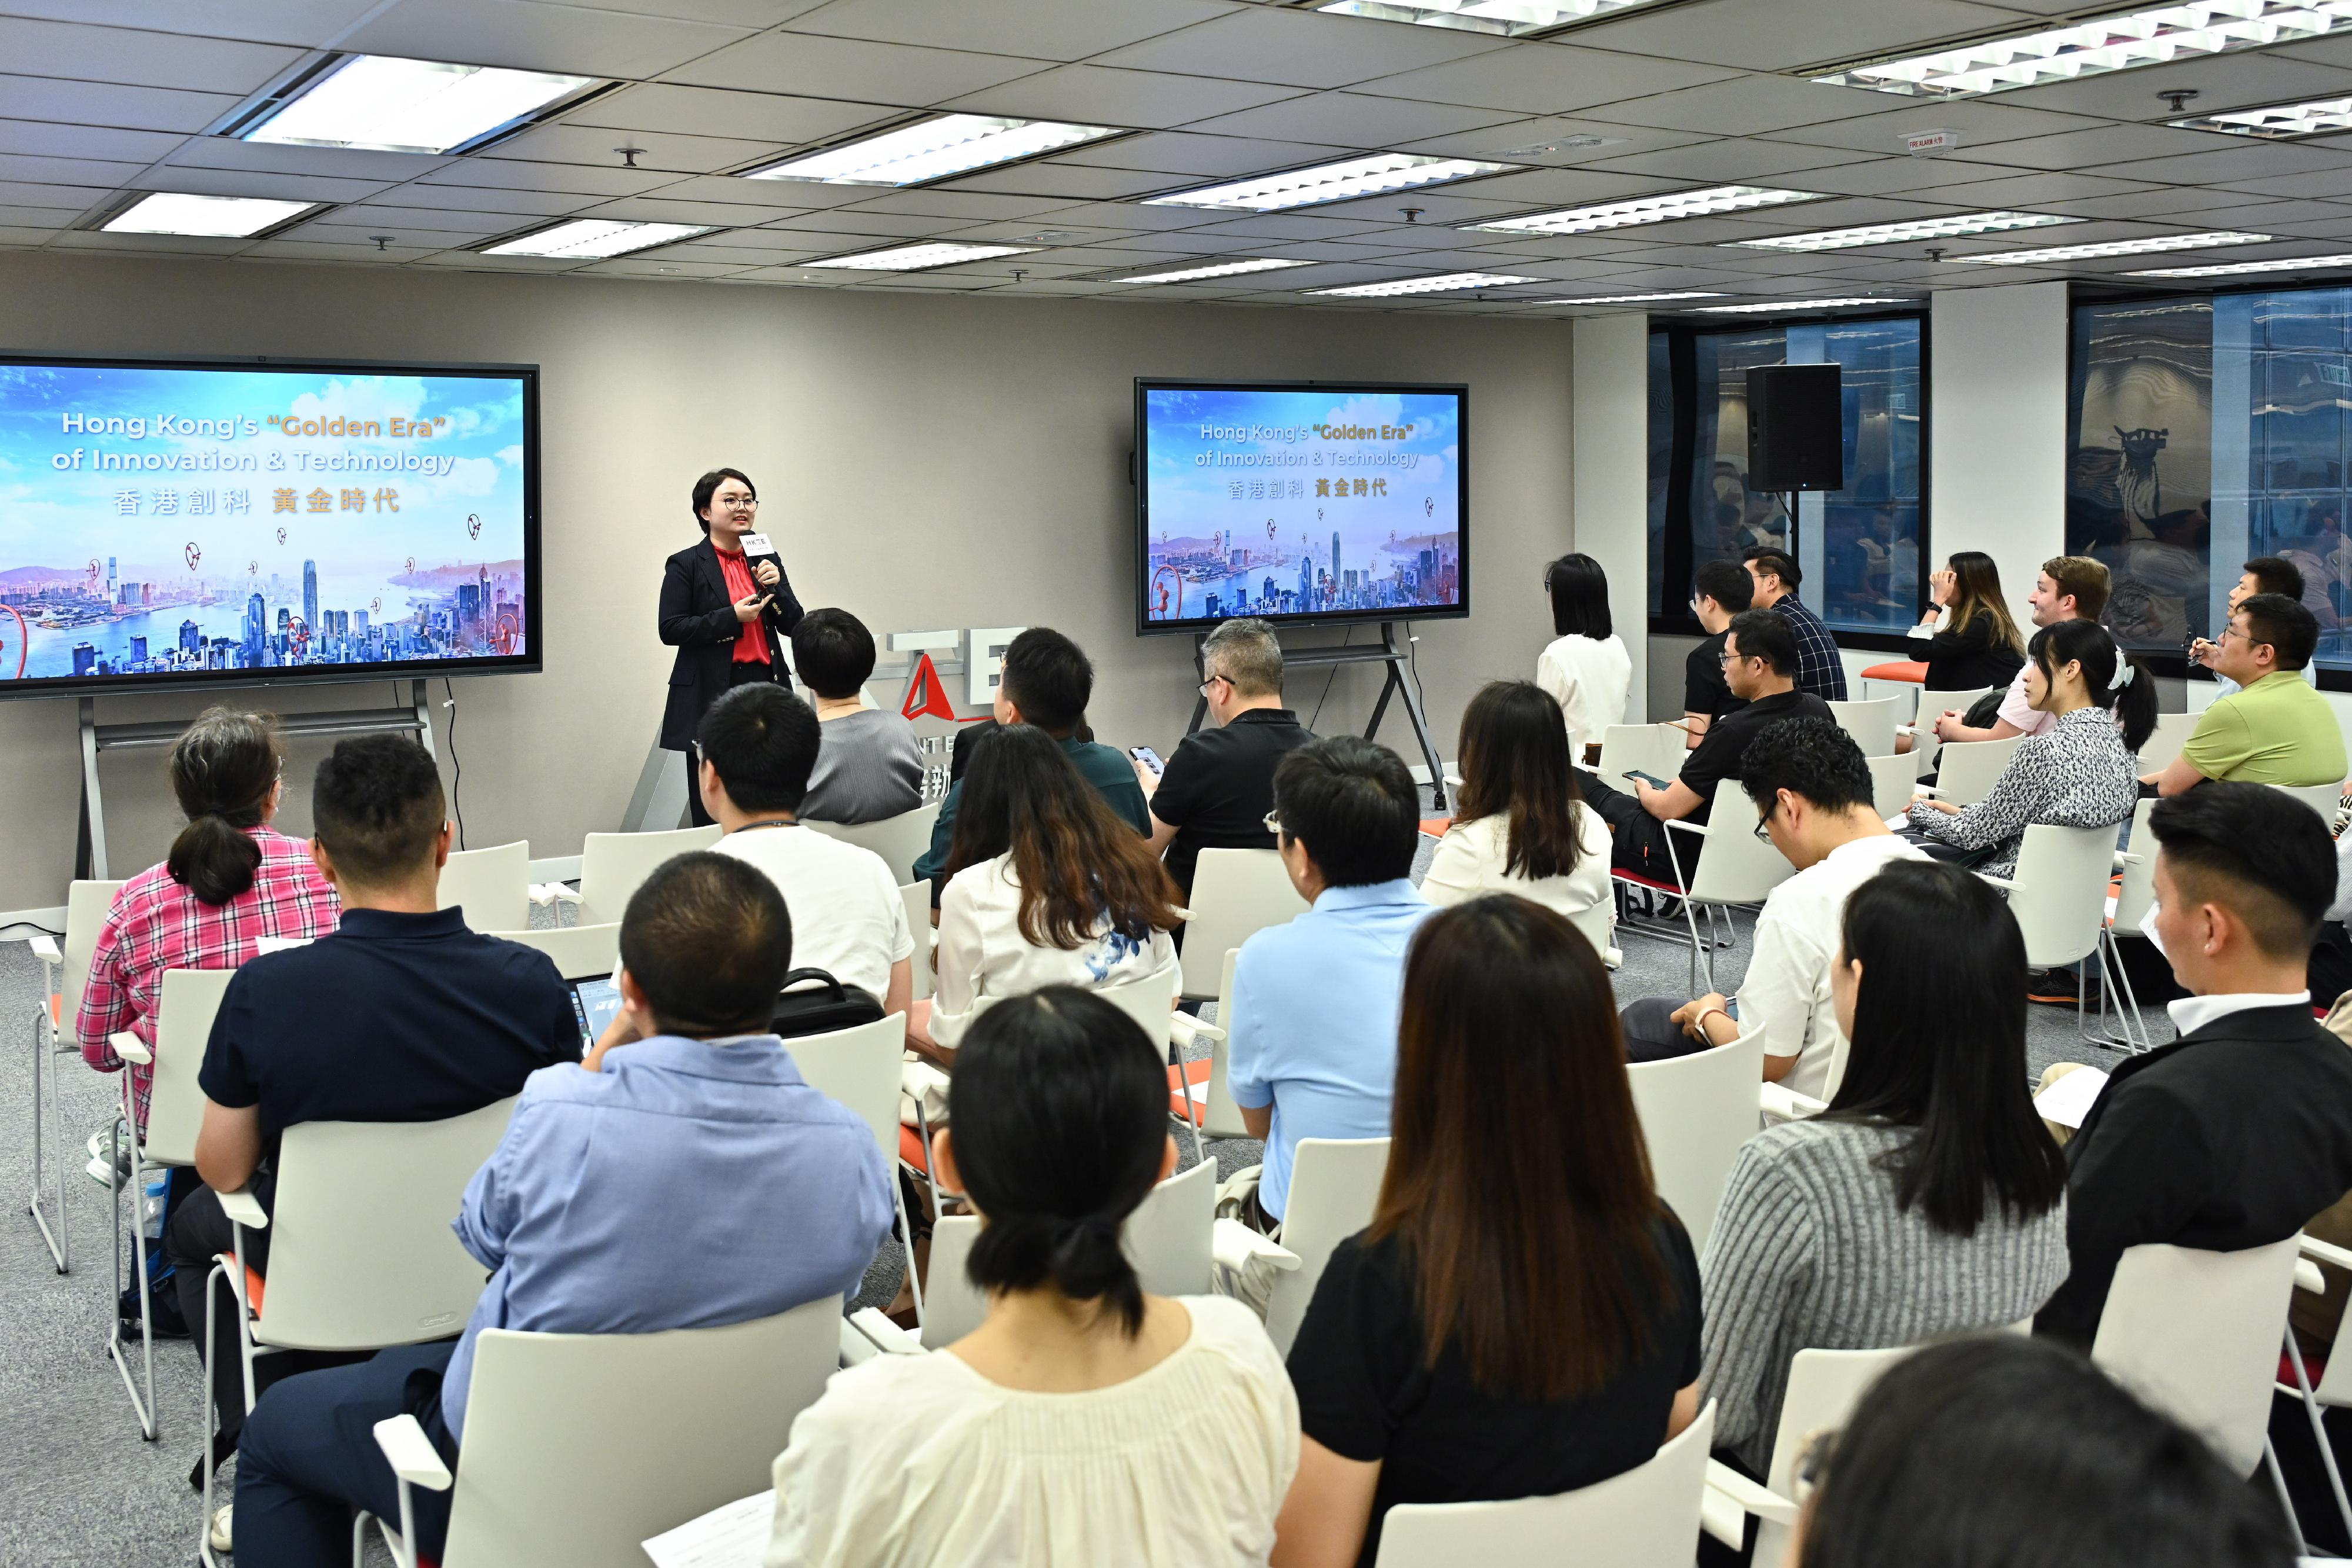 香港科技園公司講者介紹本港創業或創科公司的工作機遇。